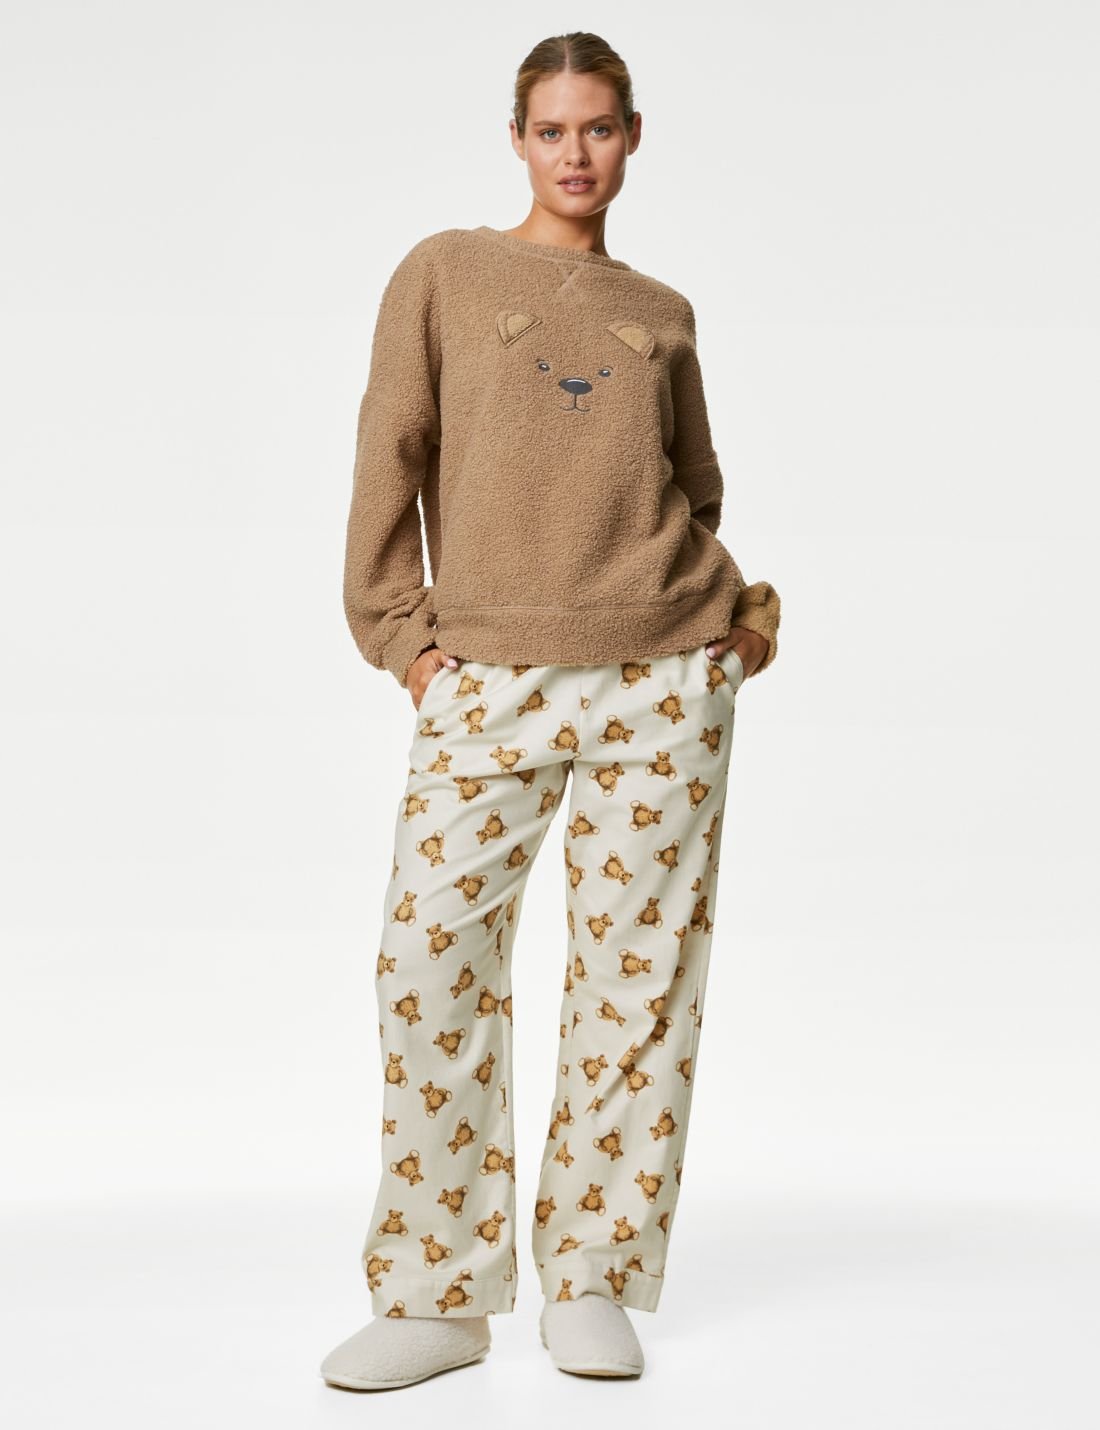 Spencer Bear™ Uzun Kollu Pijama Takımı